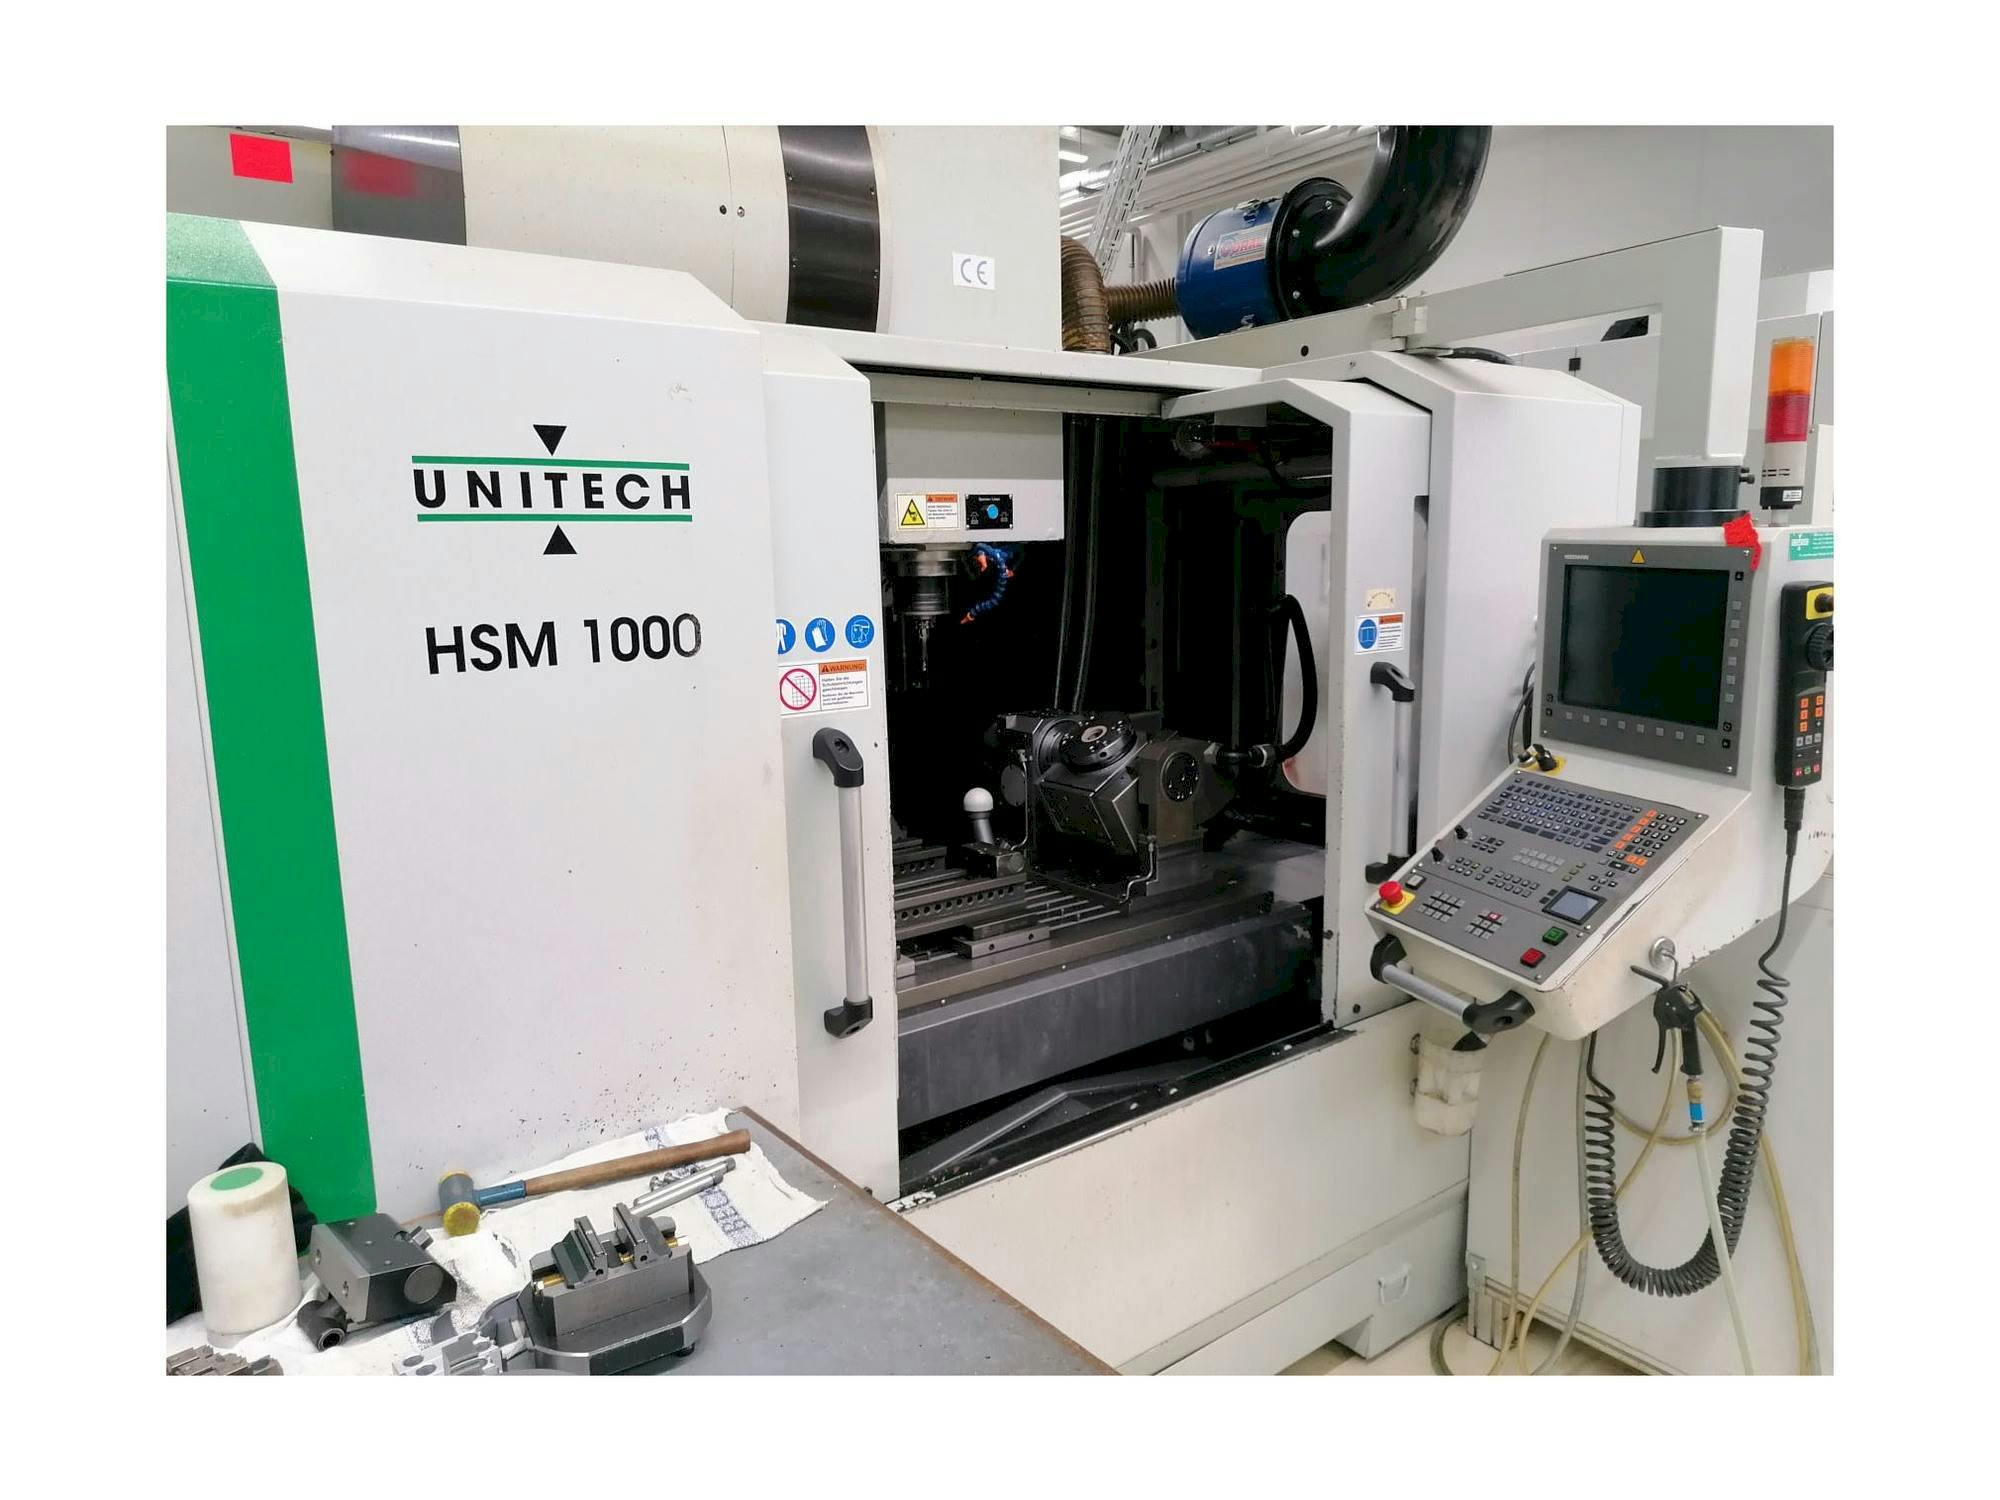 Prikaz  stroja UNITECH HSM1000  sprijeda